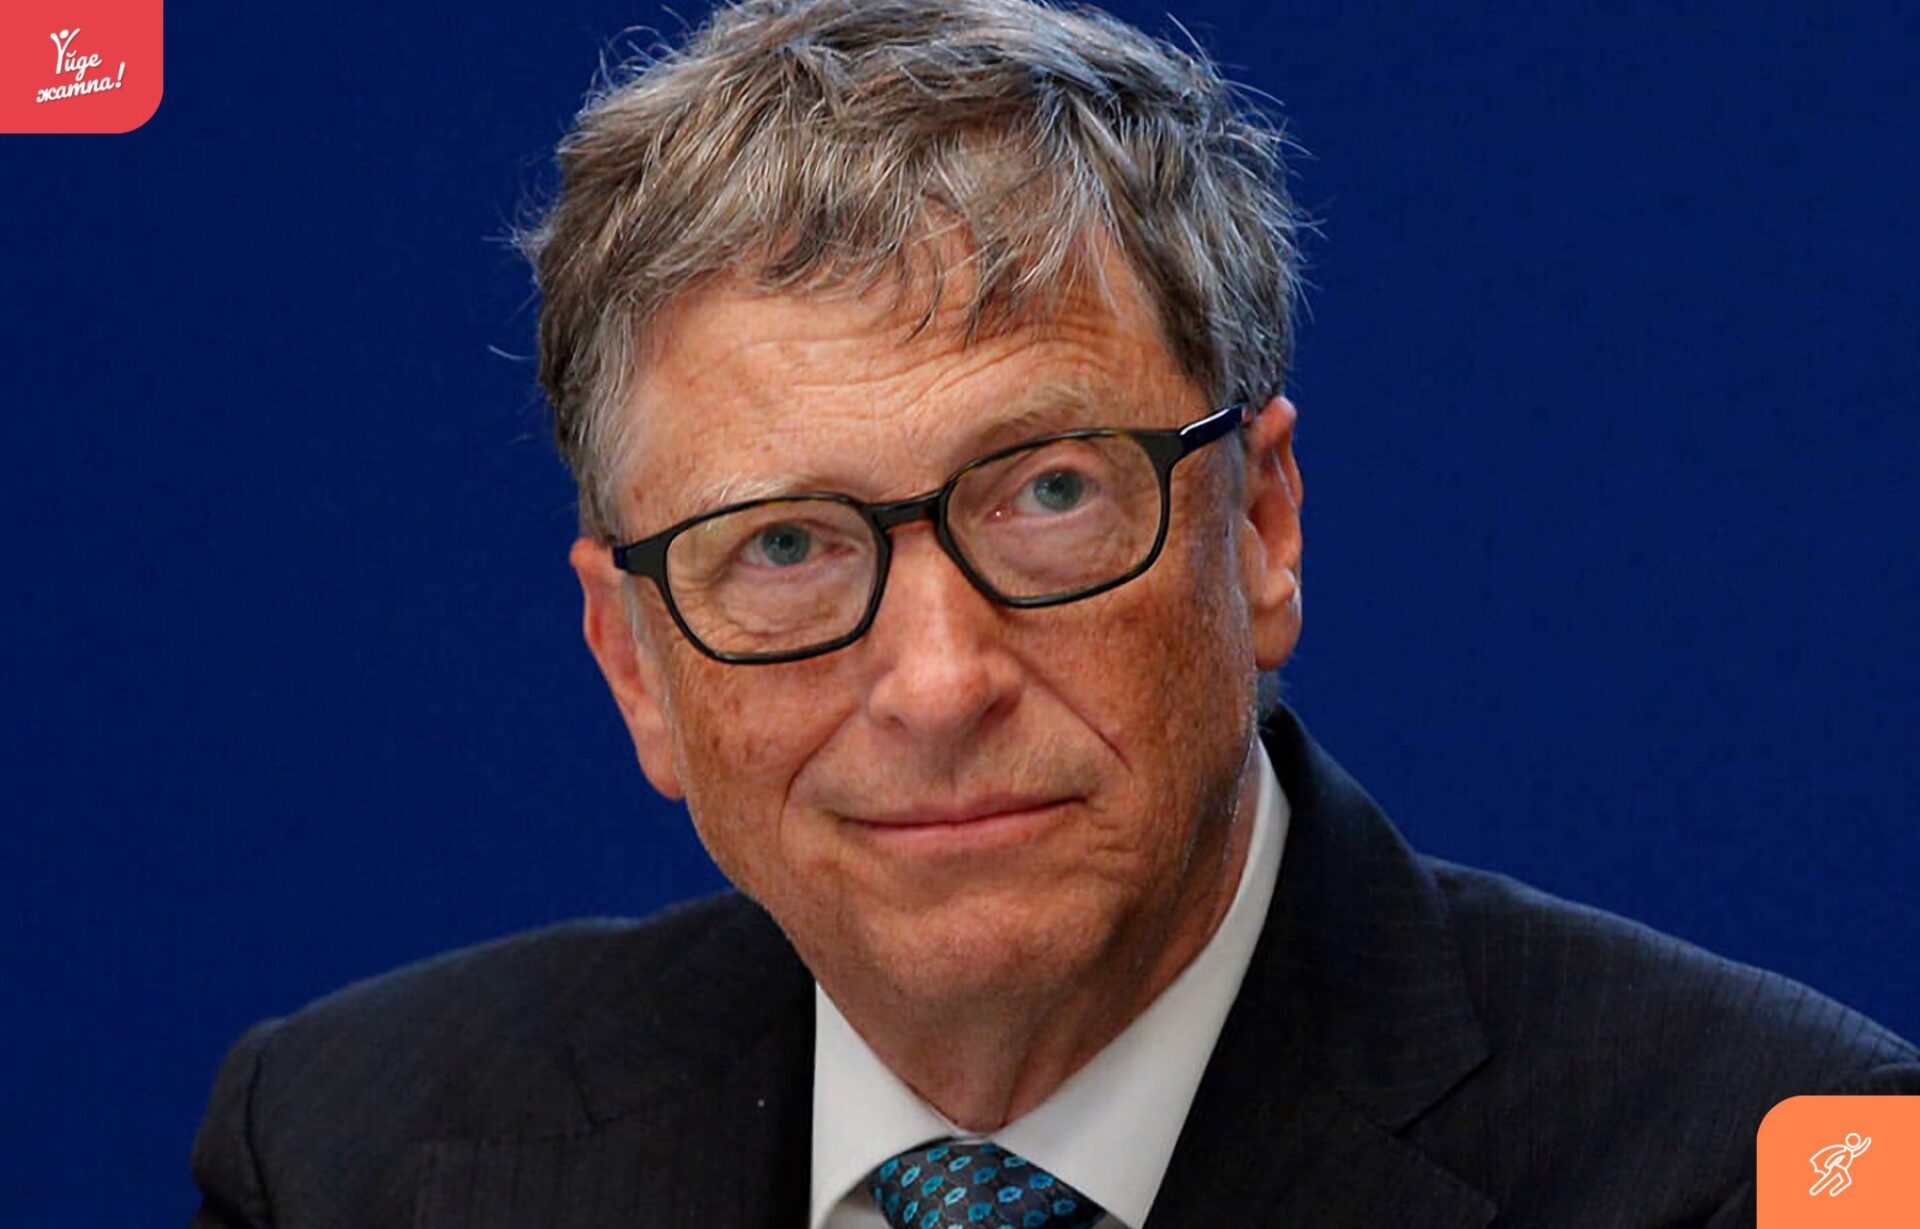 31 жасында миллиардер атанған Билл Гейтстің жетістікке жету қағидасы